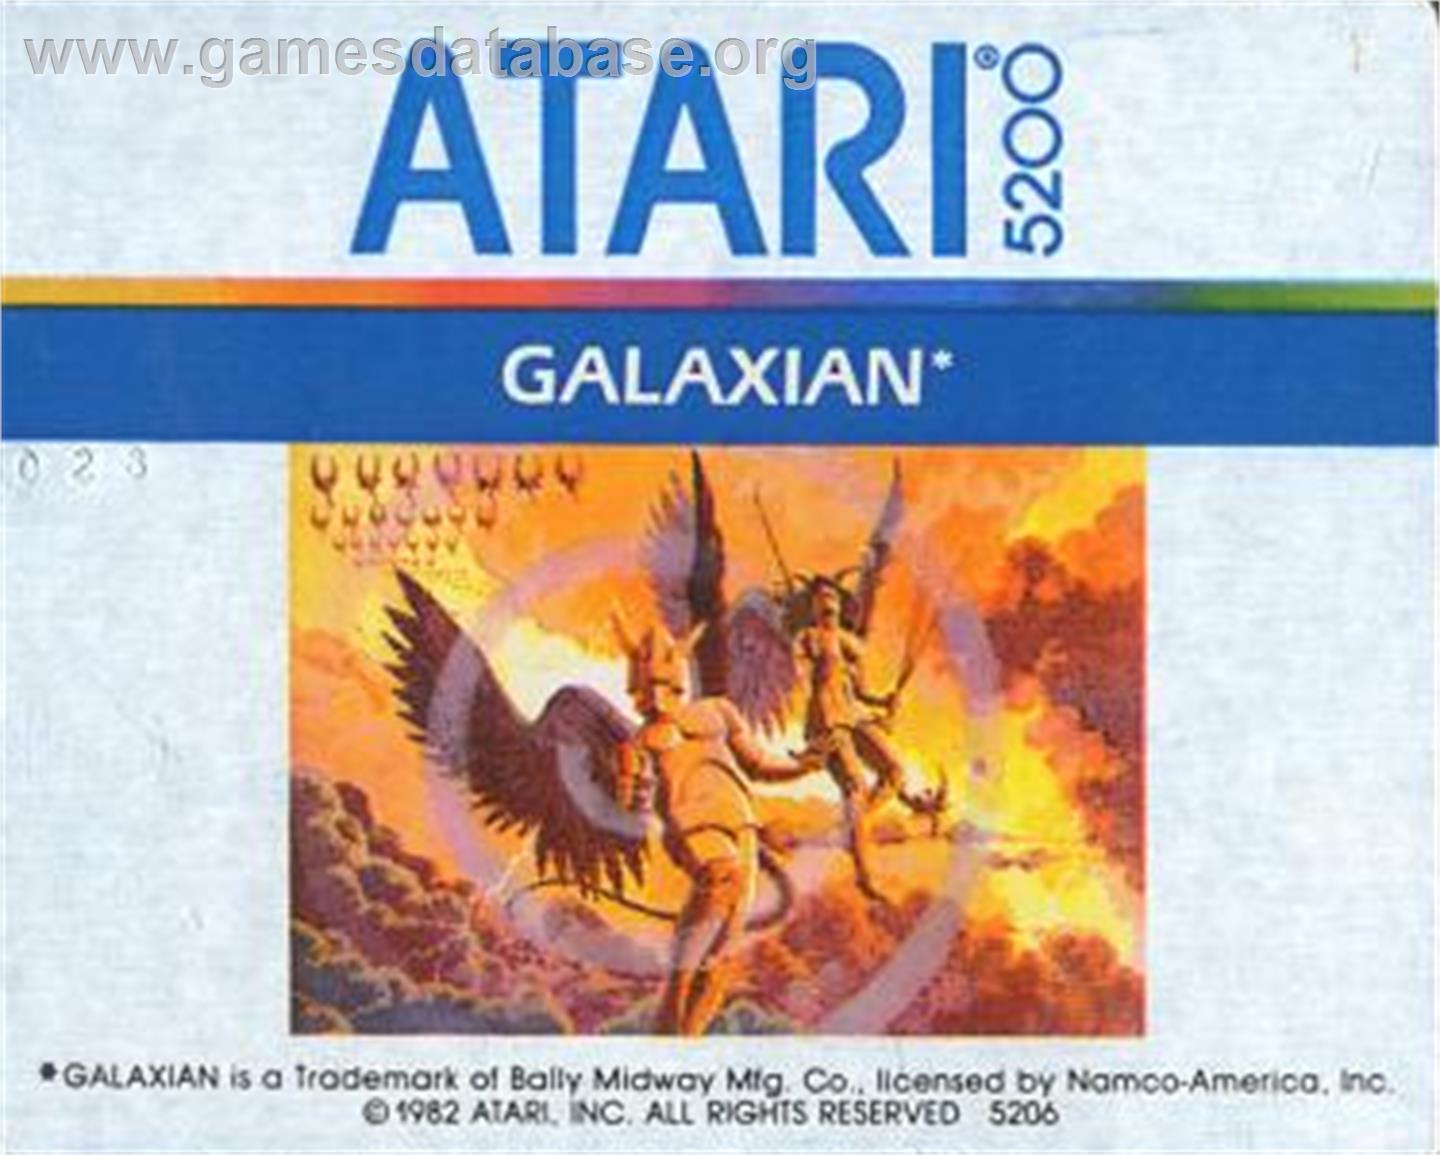 Galaxian - Atari 5200 - Artwork - Cartridge Top